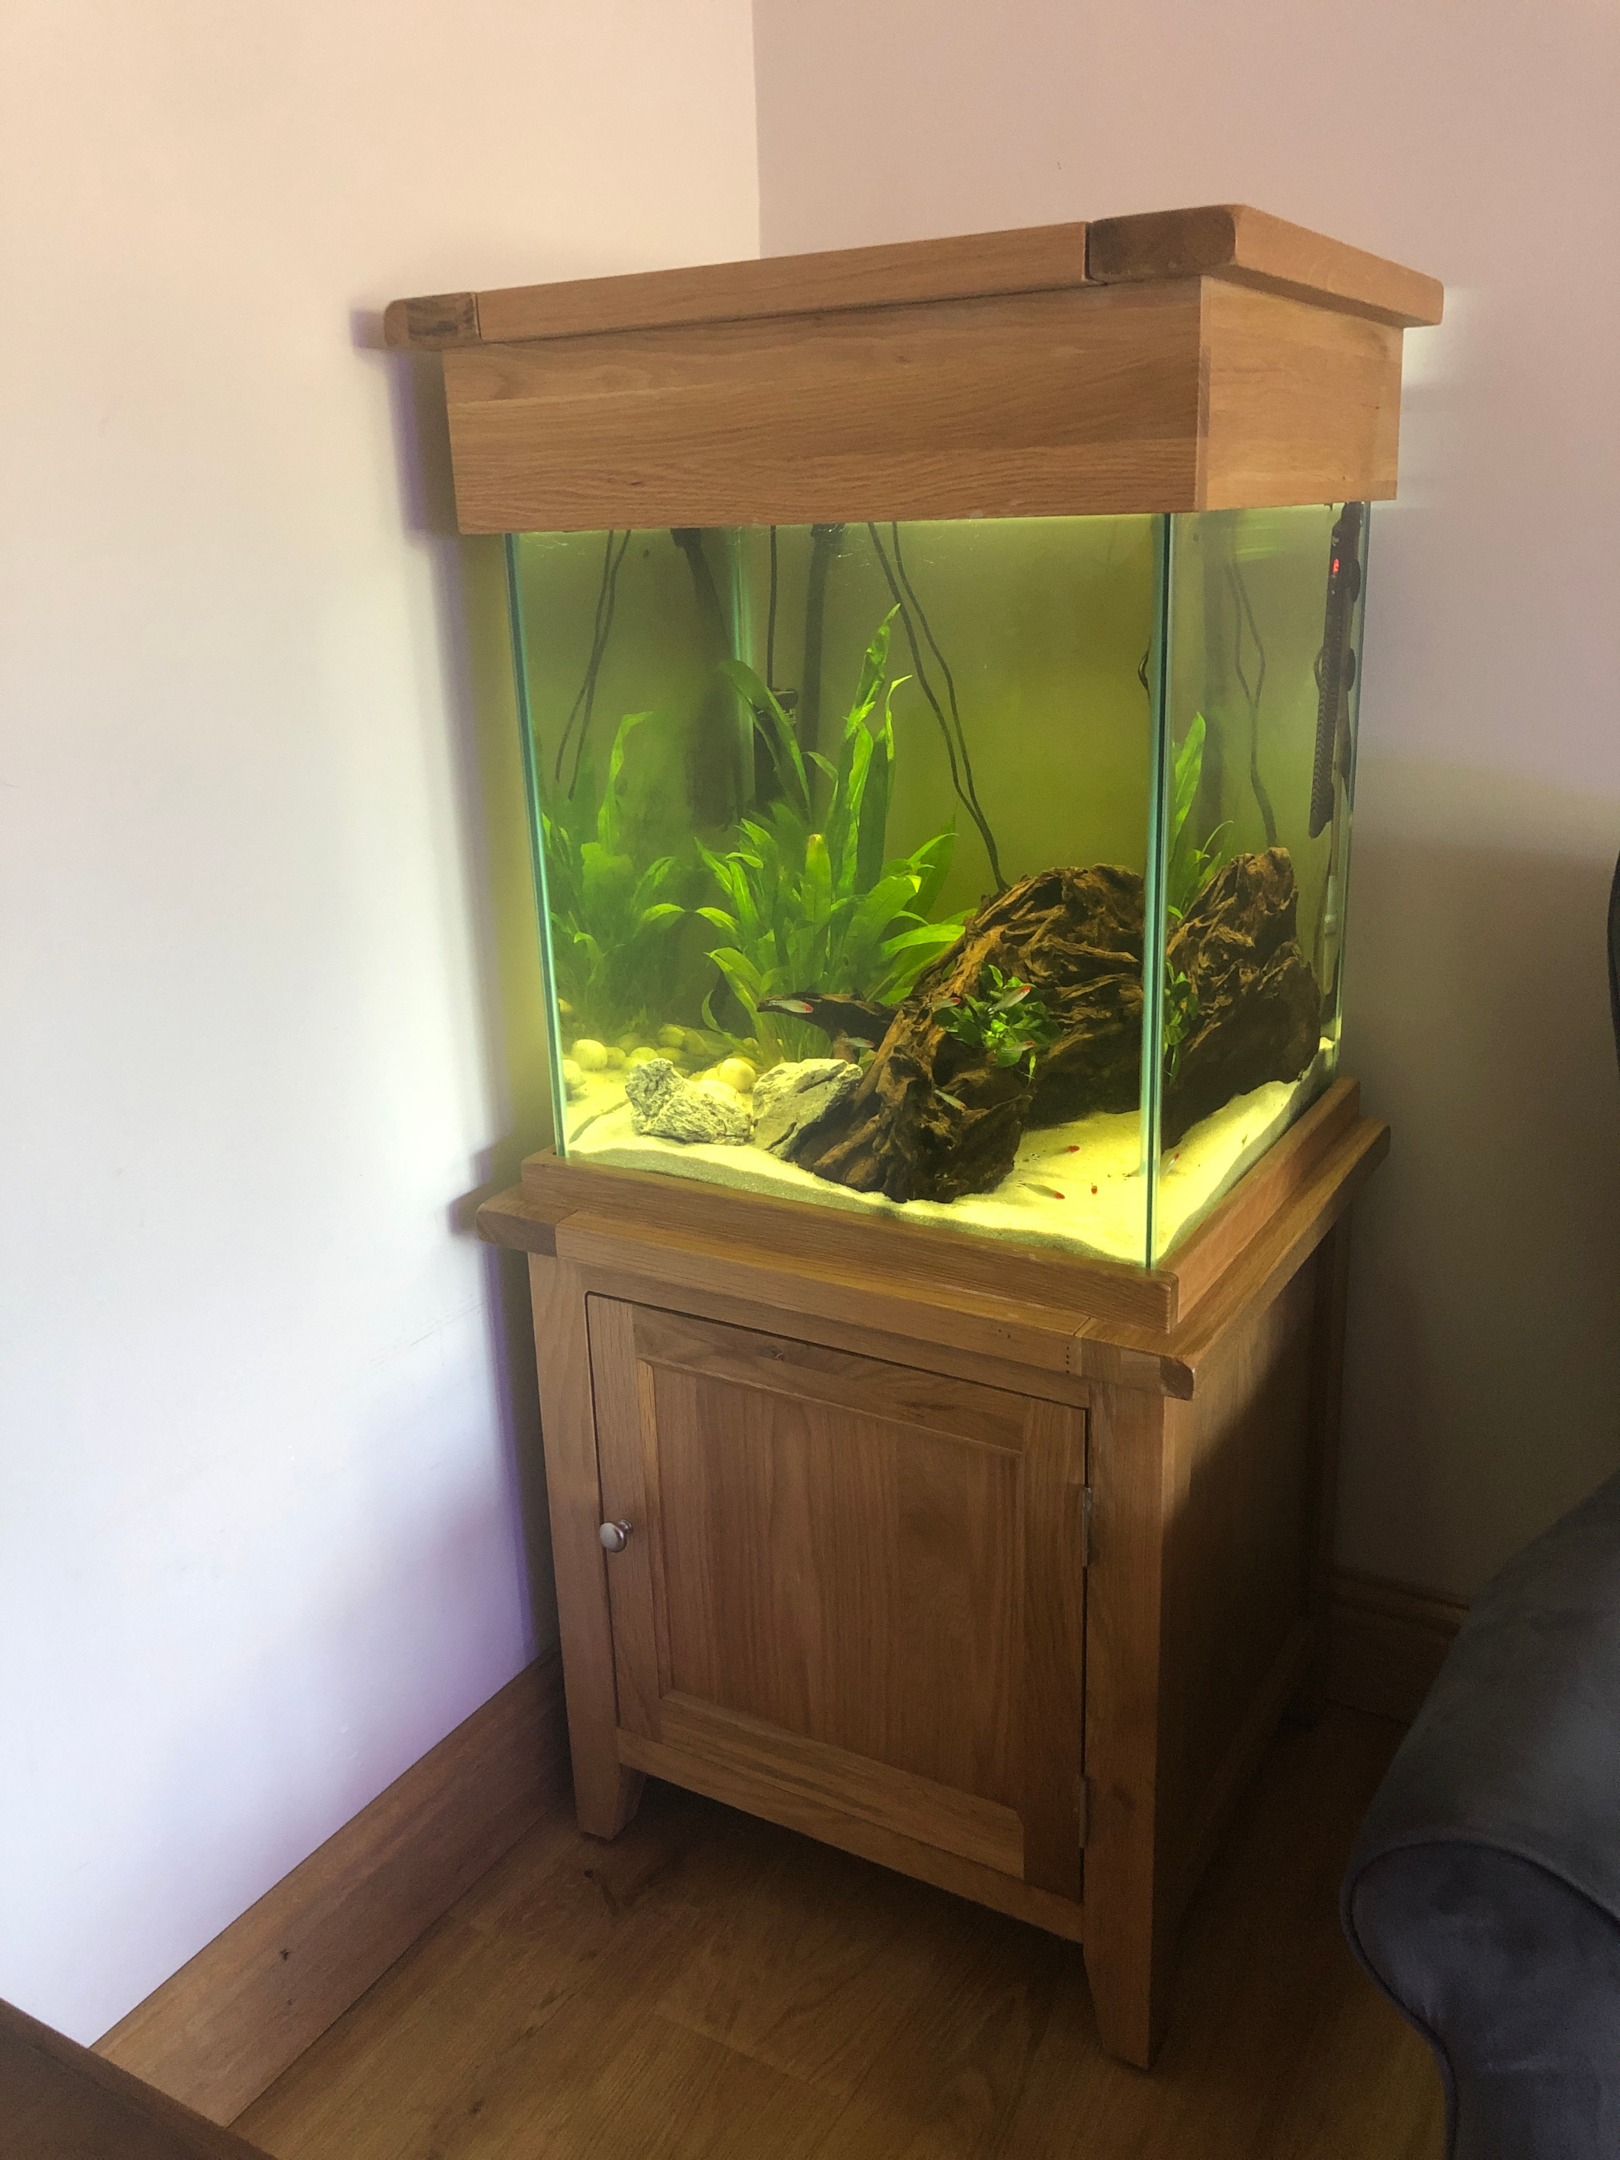 An aquarium as a furniture